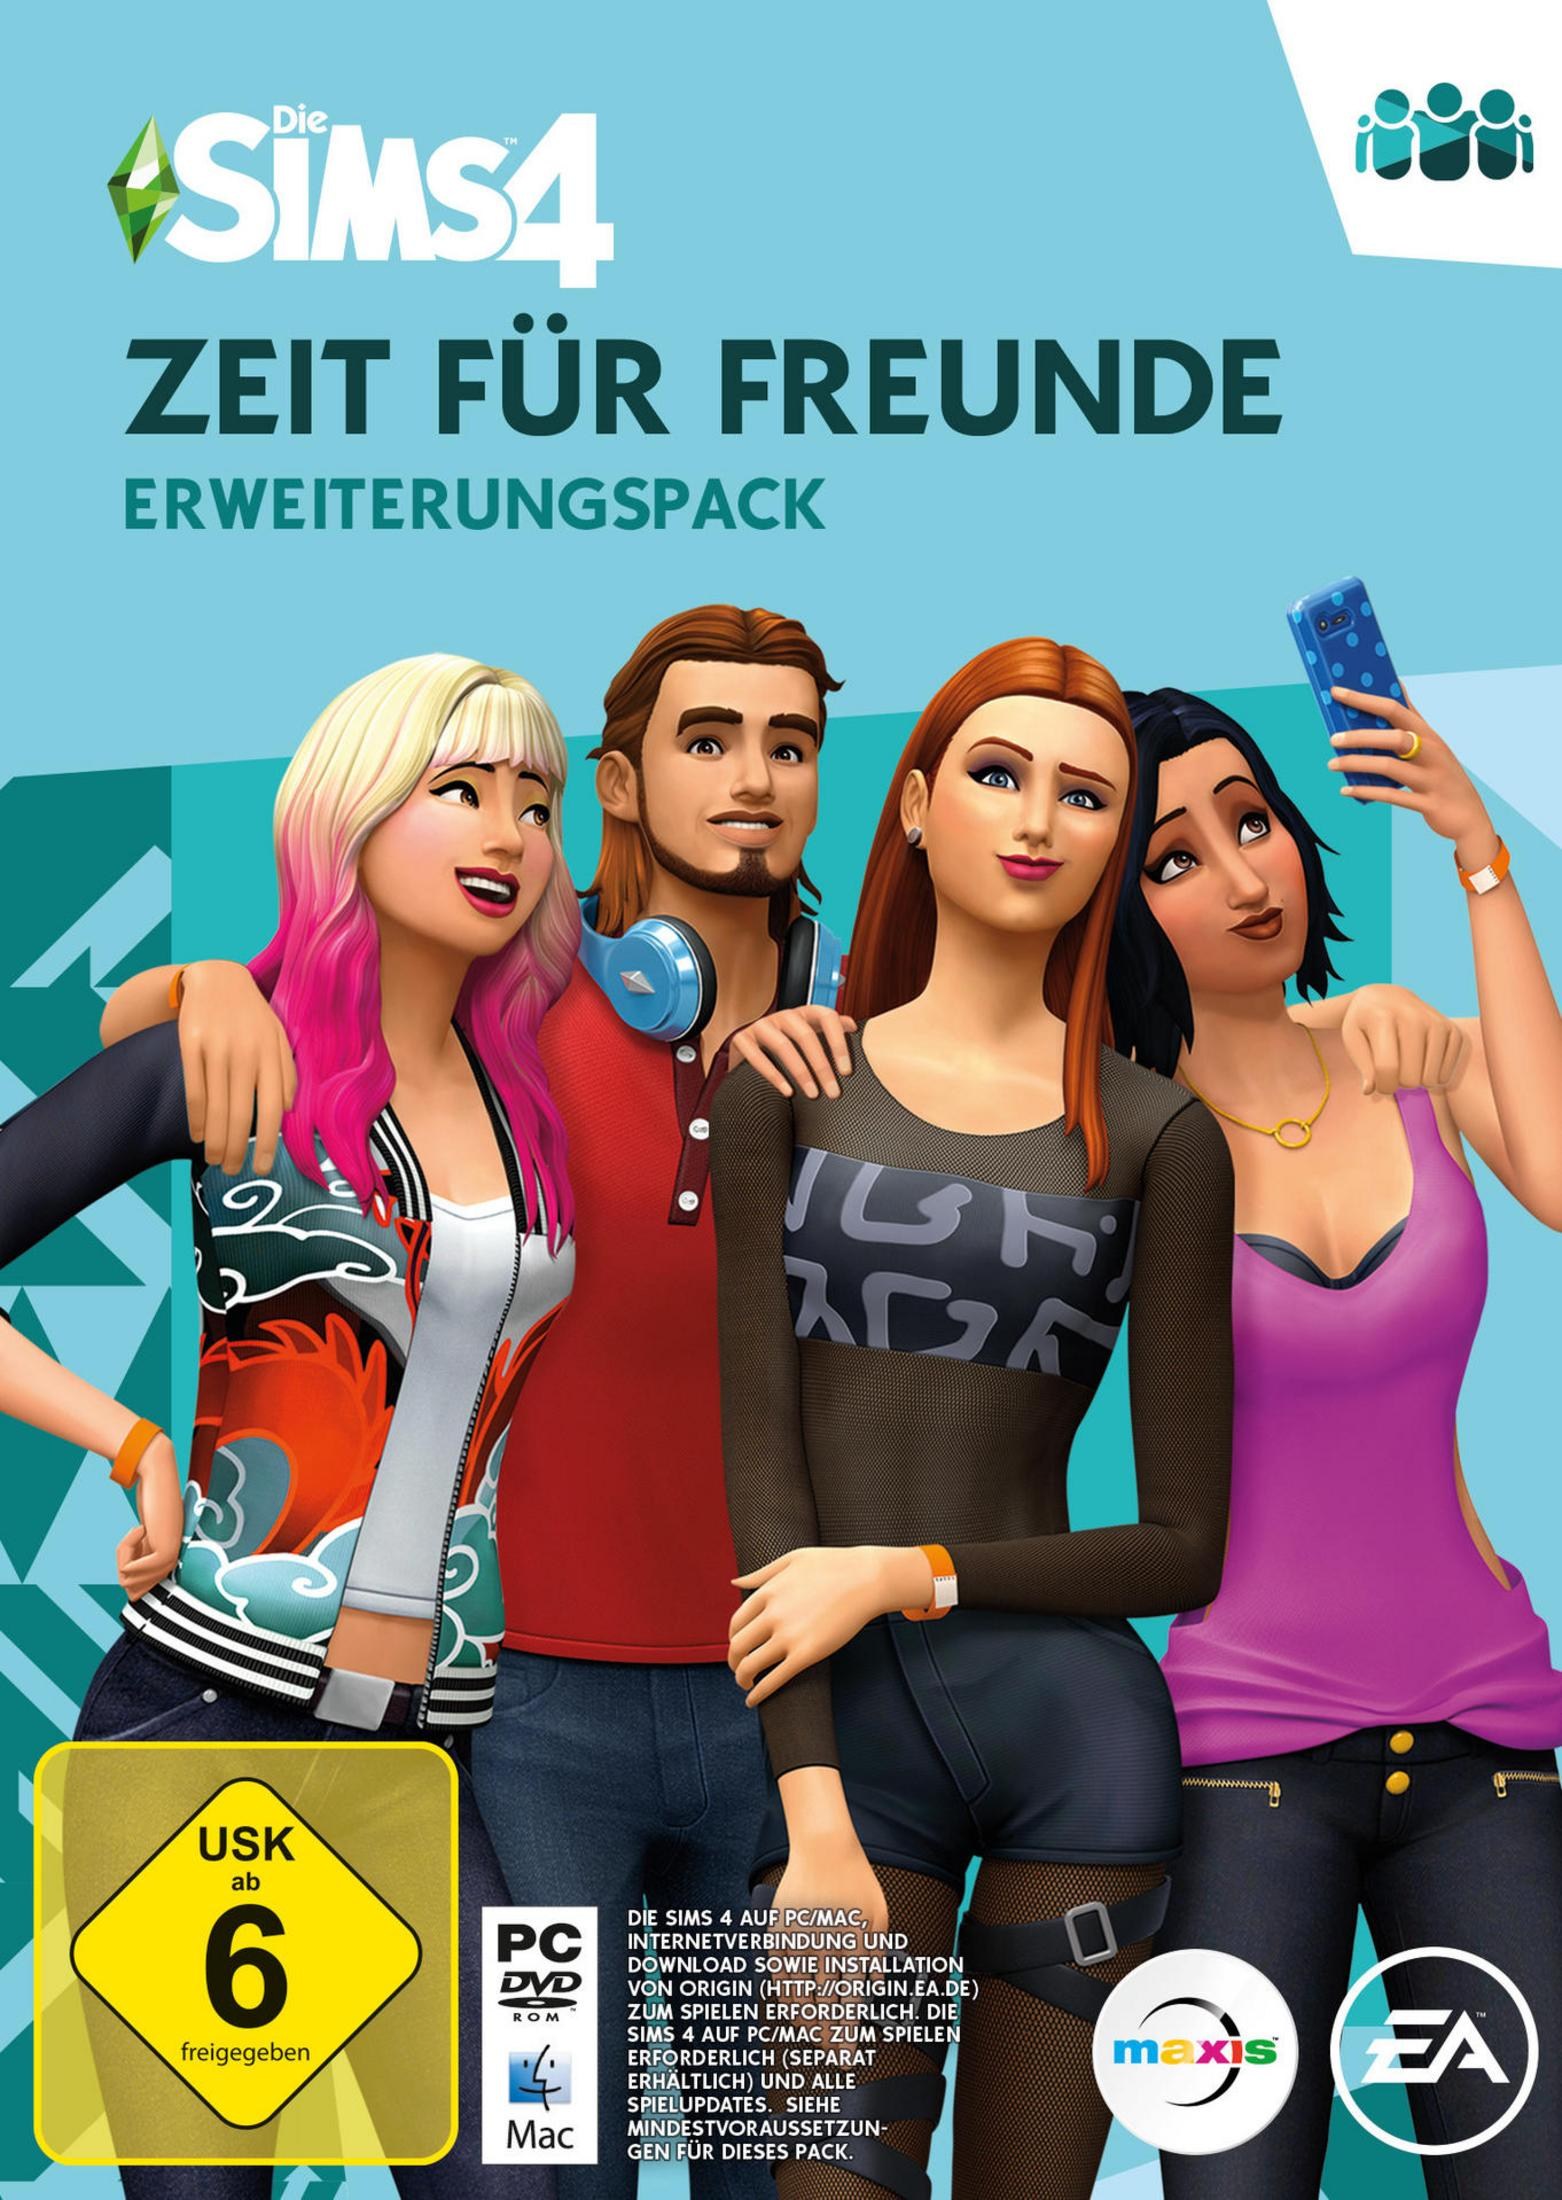 Die Sims 4: Zeit für [PC] Freunde 